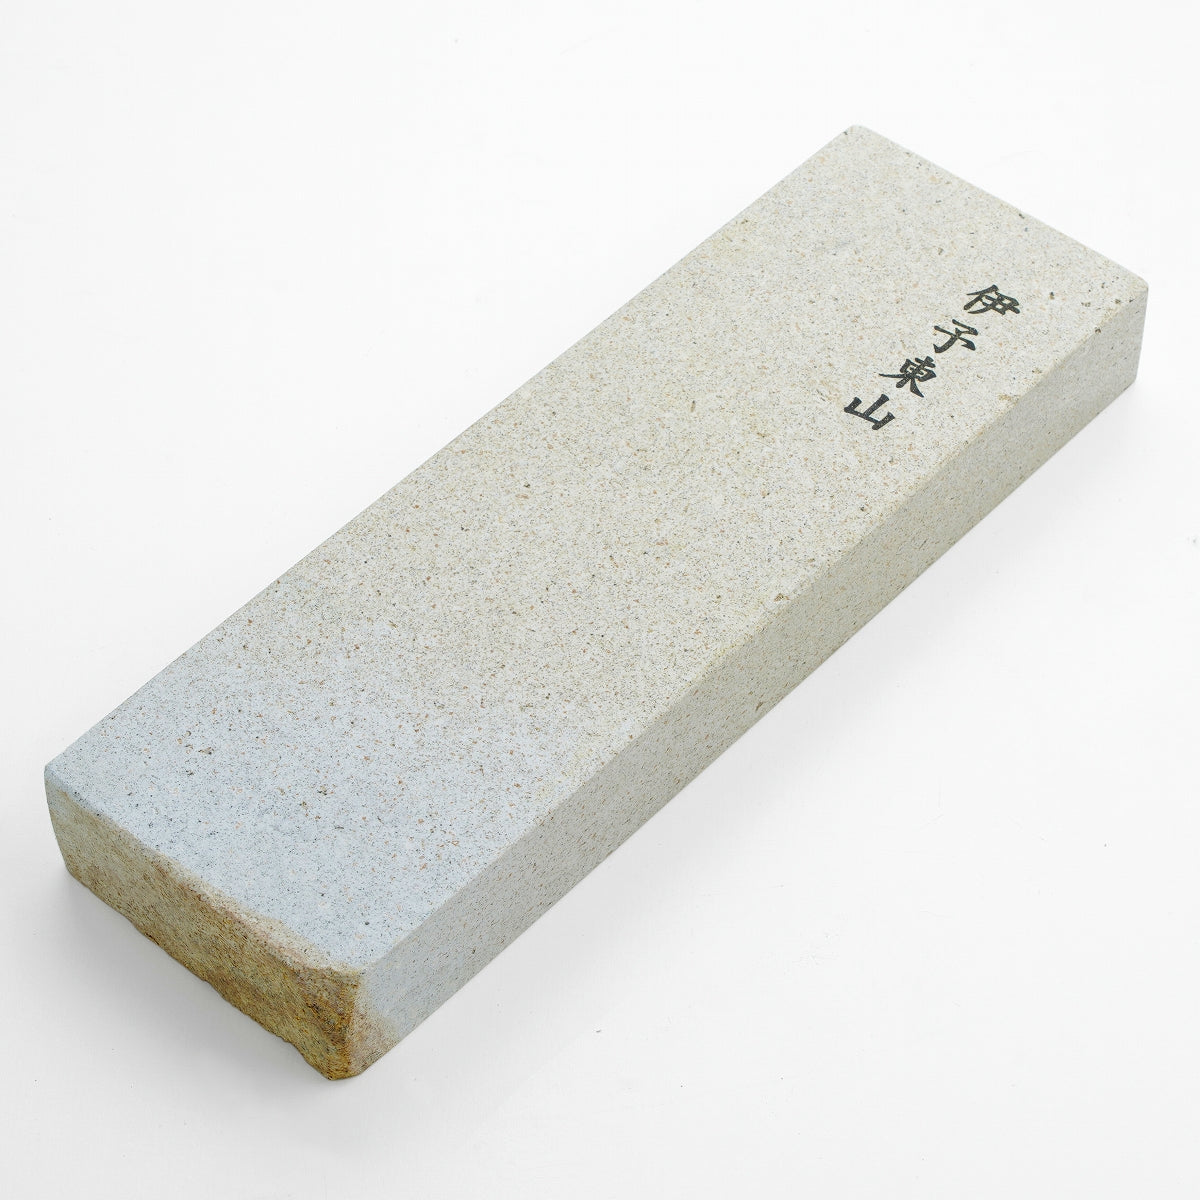 "IYO HIGASHIYAMA", Tennen Toishi (Japanese Natural Stone), 1300g